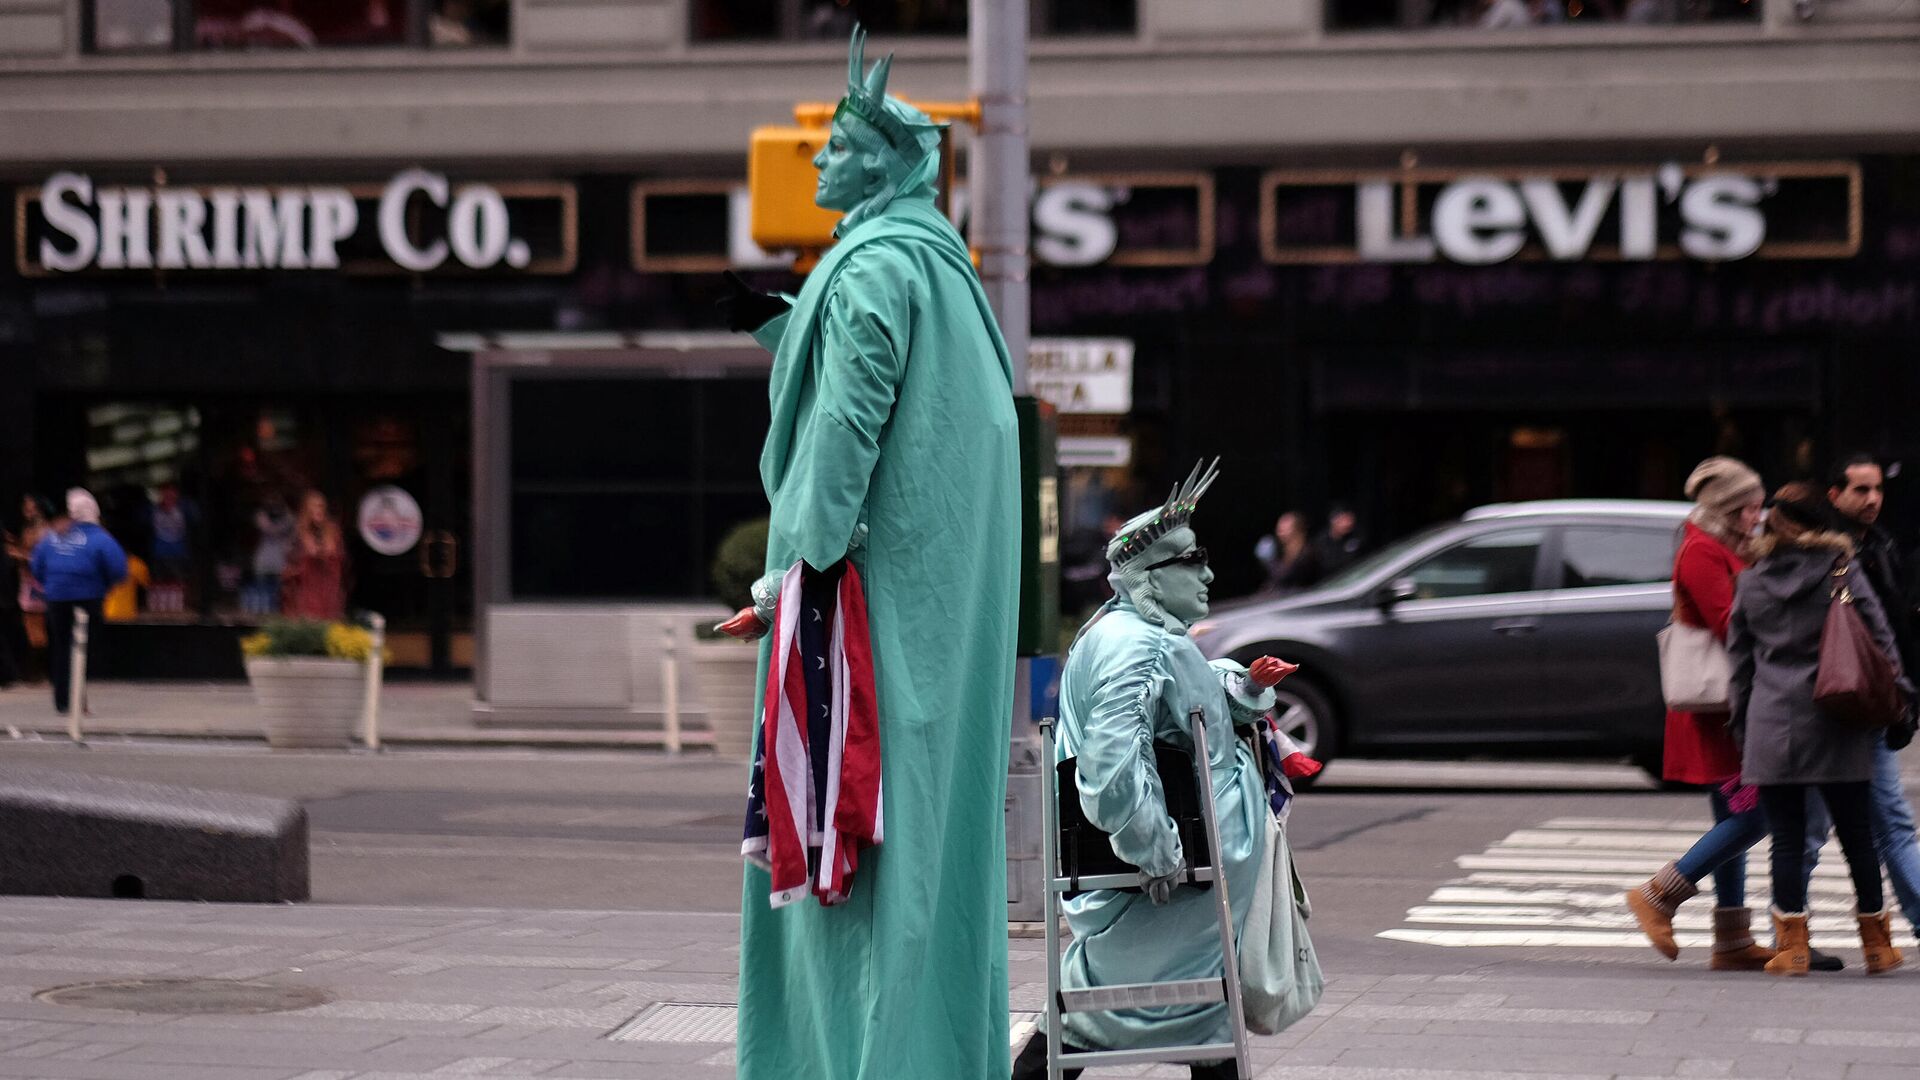 Двое мужчин, одетых как Статуя Свободы, ищут туристов, чтобы позировать с ними для фотографий в обмен на пожертвования на Таймс-сквер в Нью-Йорке - Sputnik Азербайджан, 1920, 06.12.2021